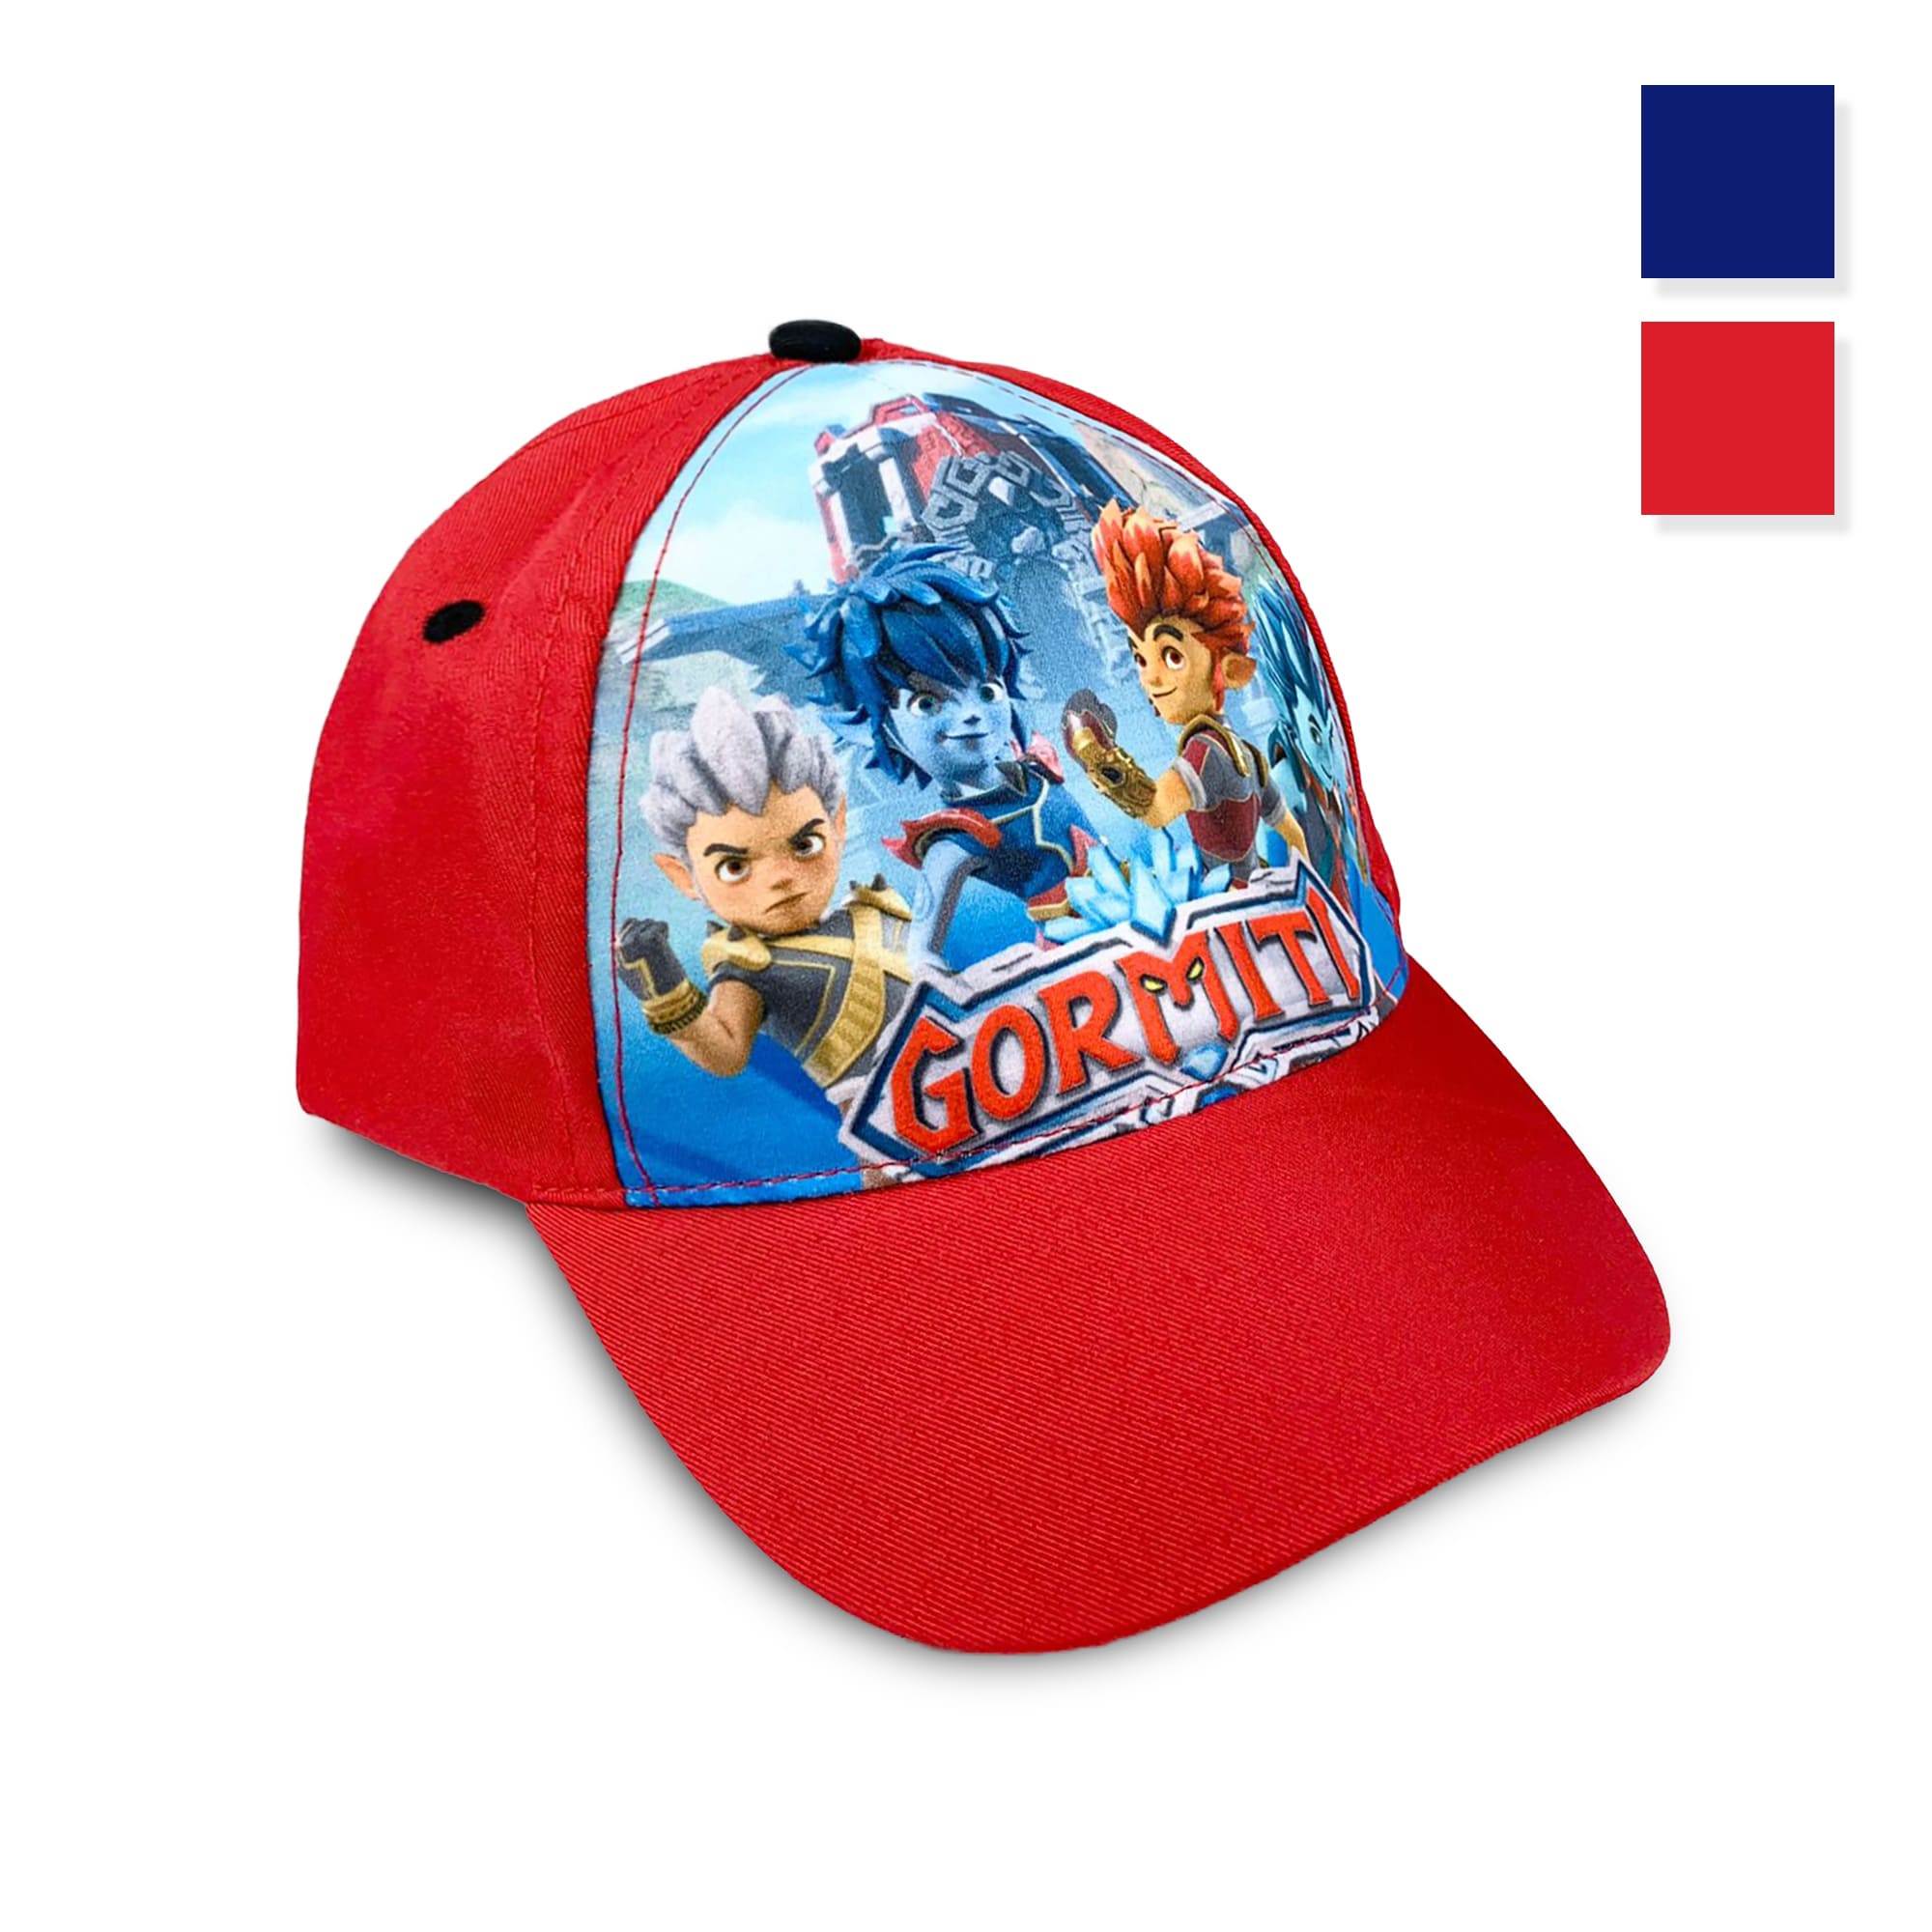 Cappellino per bambino ufficiale Gormiti berretto baseball con visiera 4196